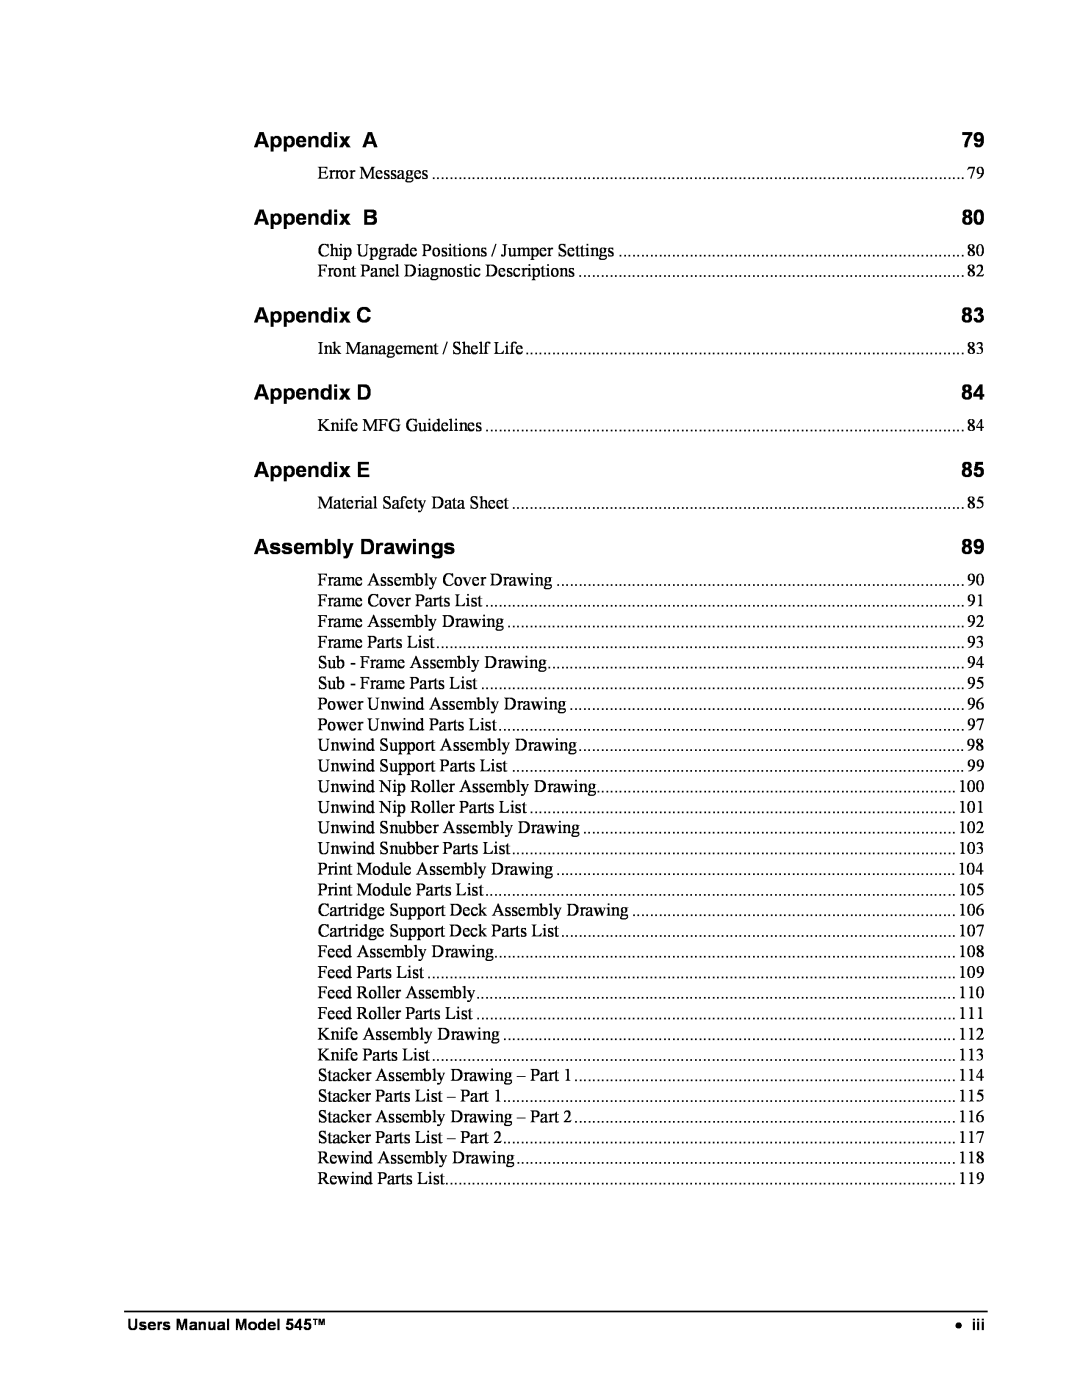 Paxar 545 user manual Appendix A, Appendix B, Appendix C, Appendix D, Appendix E, Assembly Drawings 